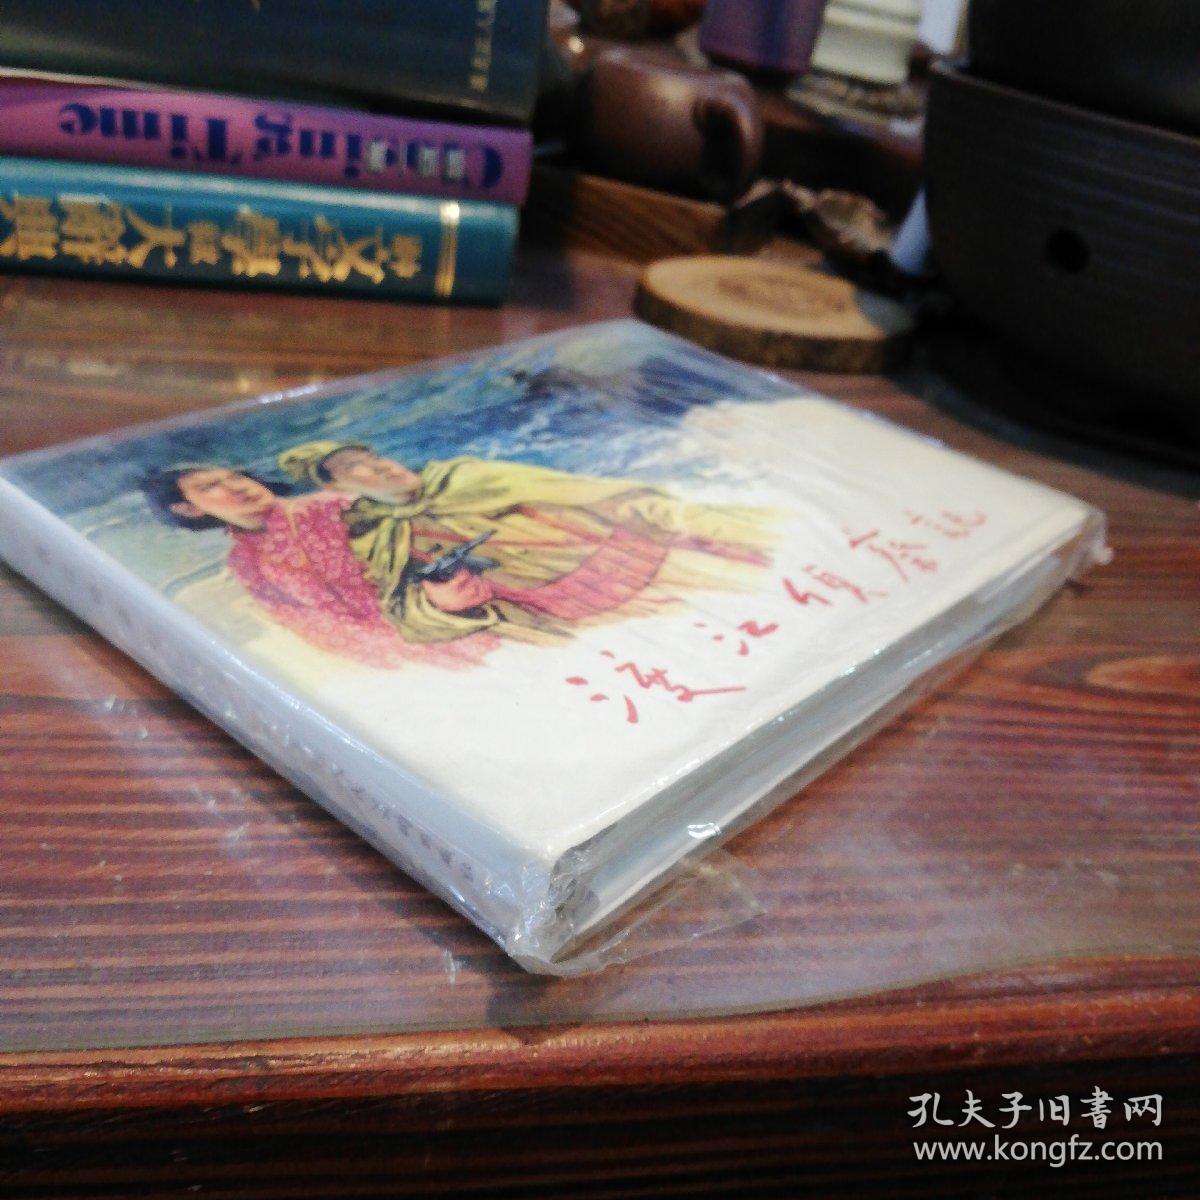 渡江侦察记     上海人民美术出版社32开精装本连环画      2004年一版一印仅印4000册